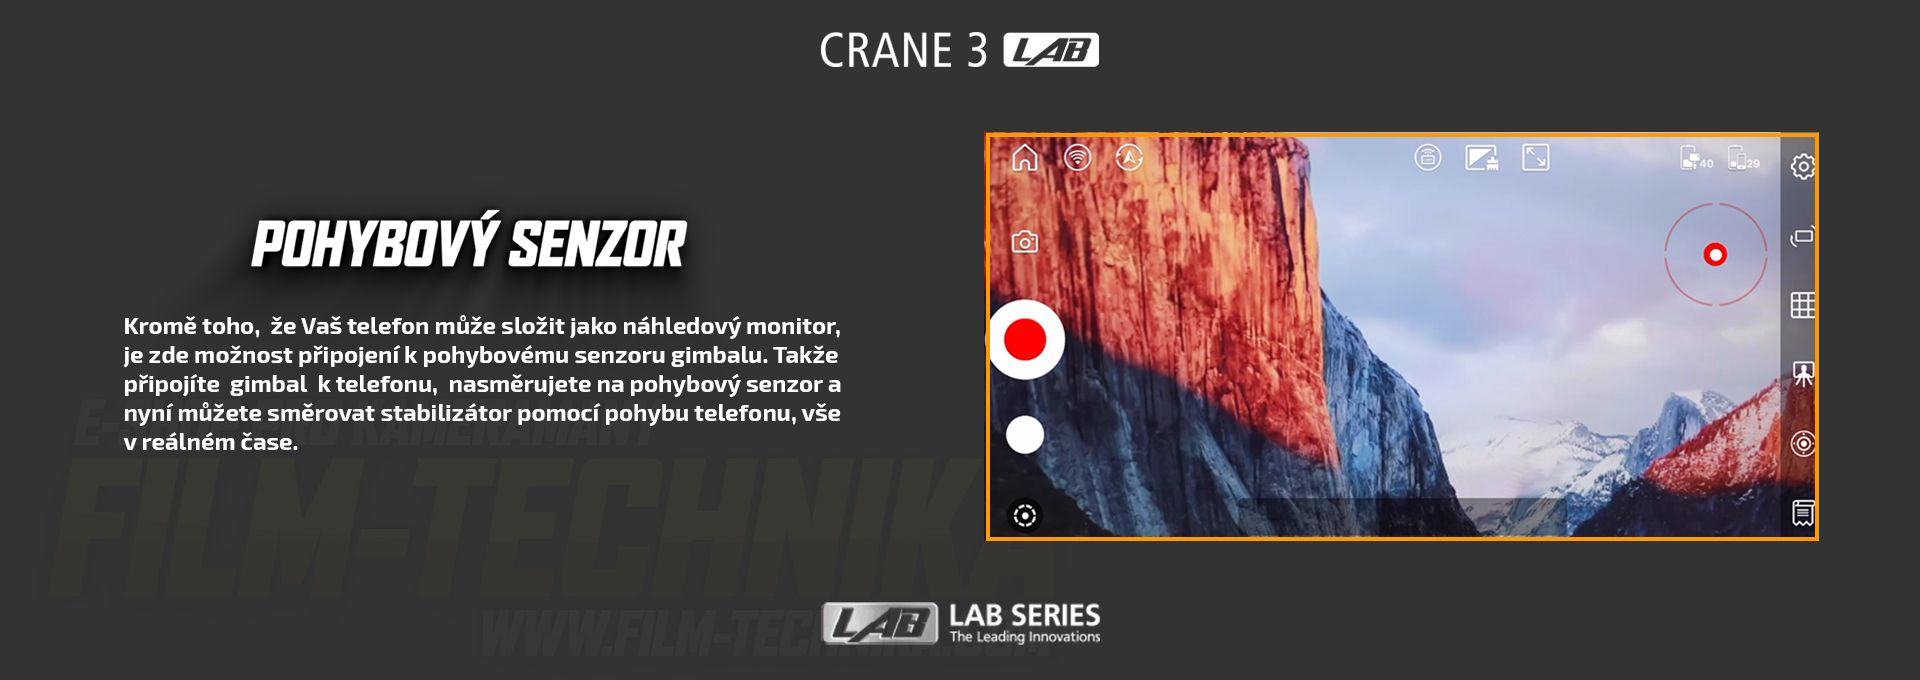 film-technika-zhiyun-crane3-lab-intext11